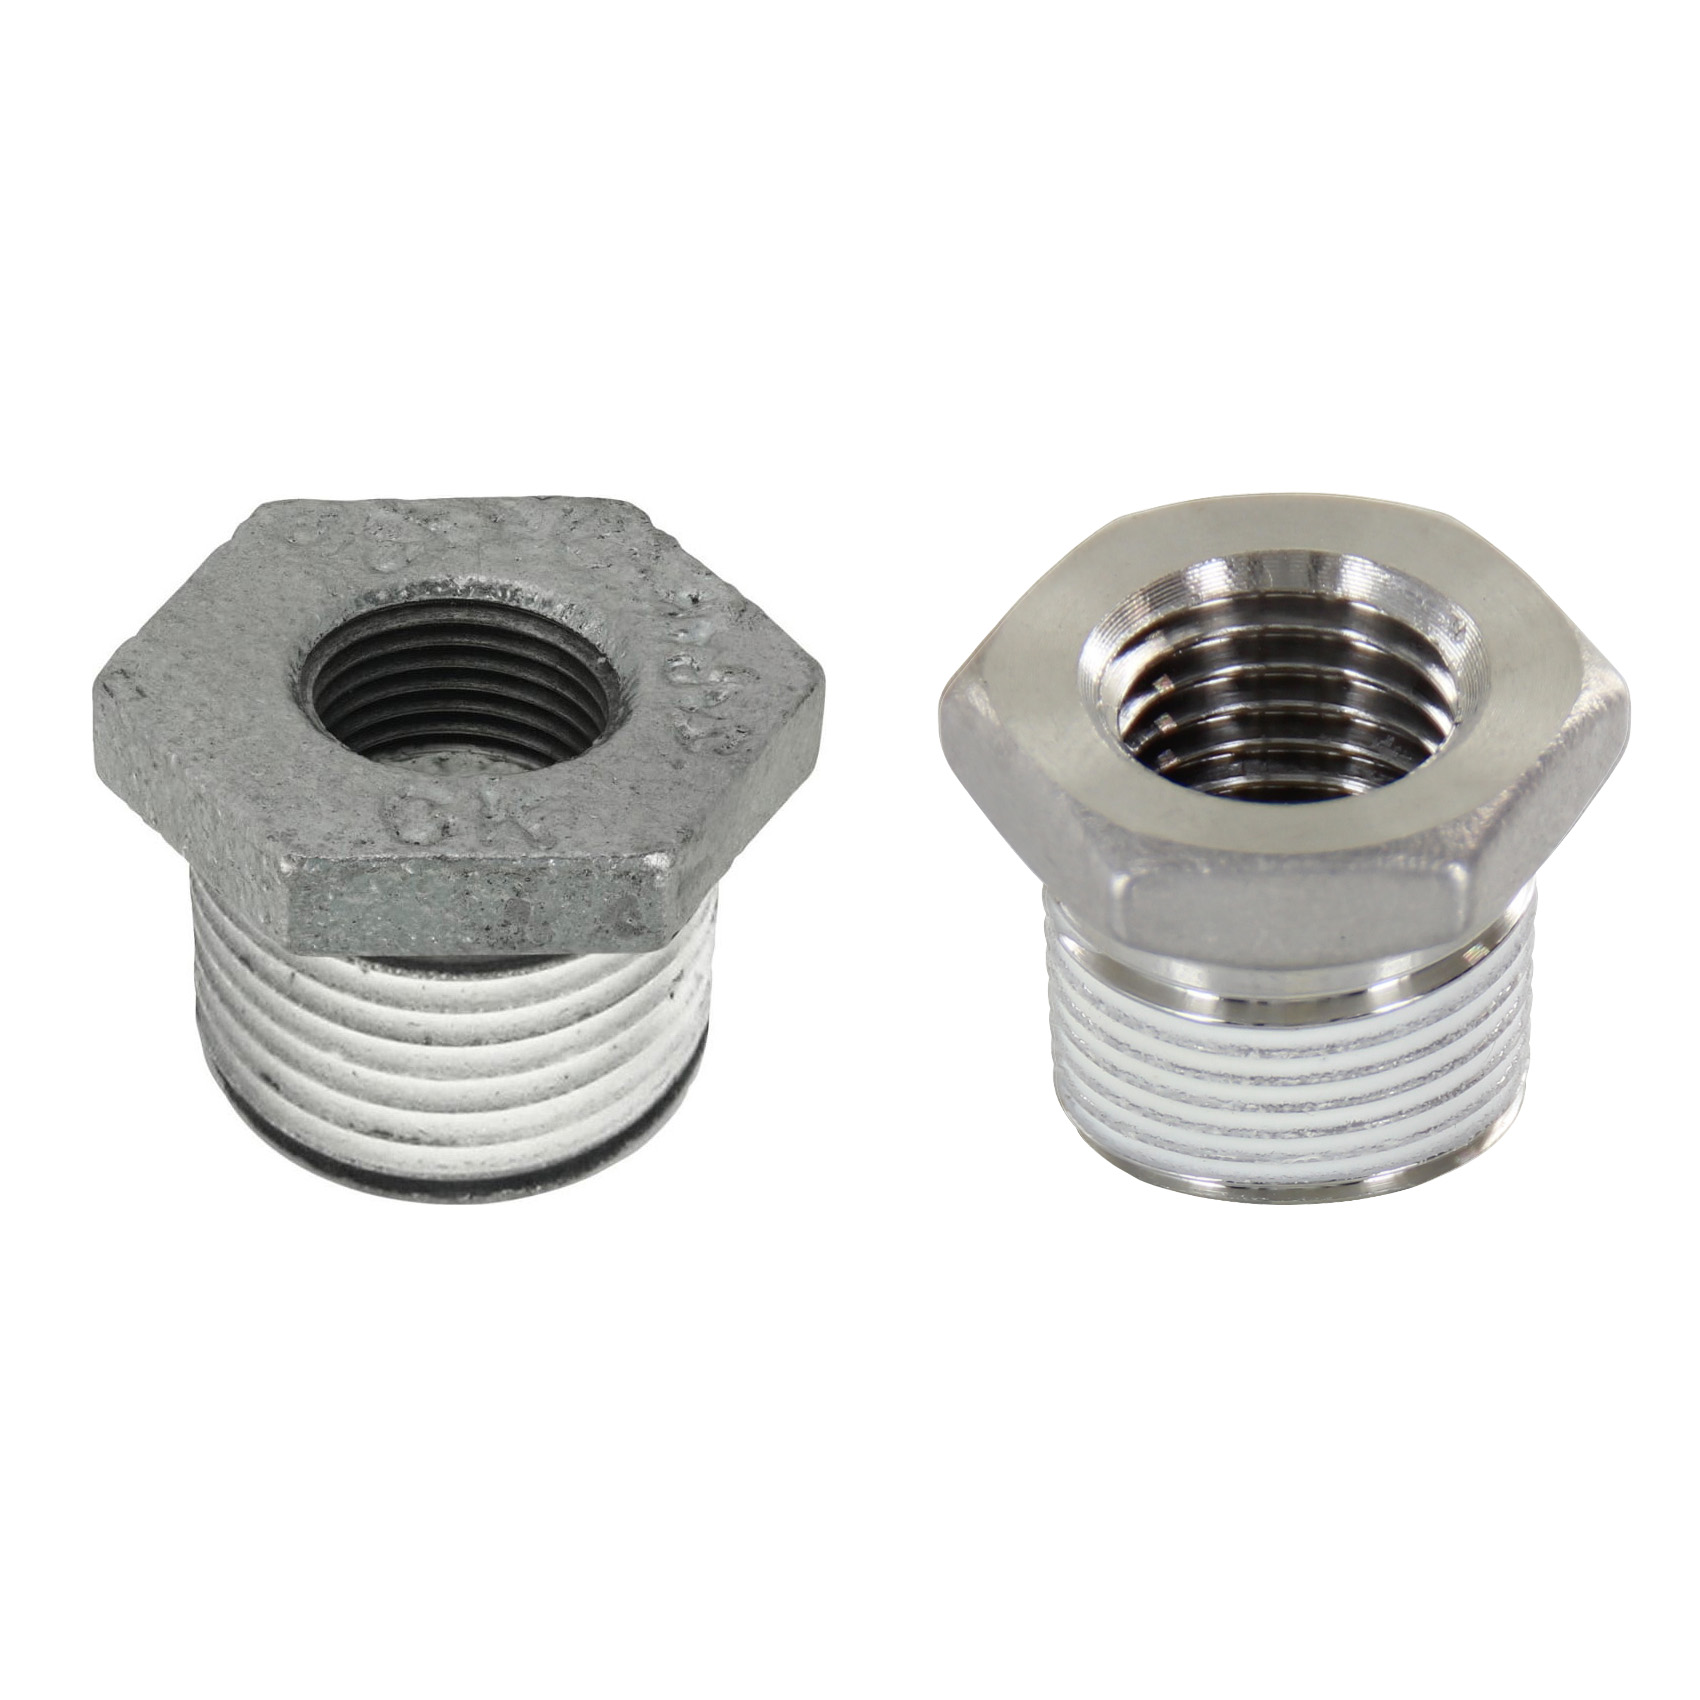 Low Pressure Screw Fittings - Thread Coated Type - Steel Pipe Fittings - Bushings (SGCPB36) 